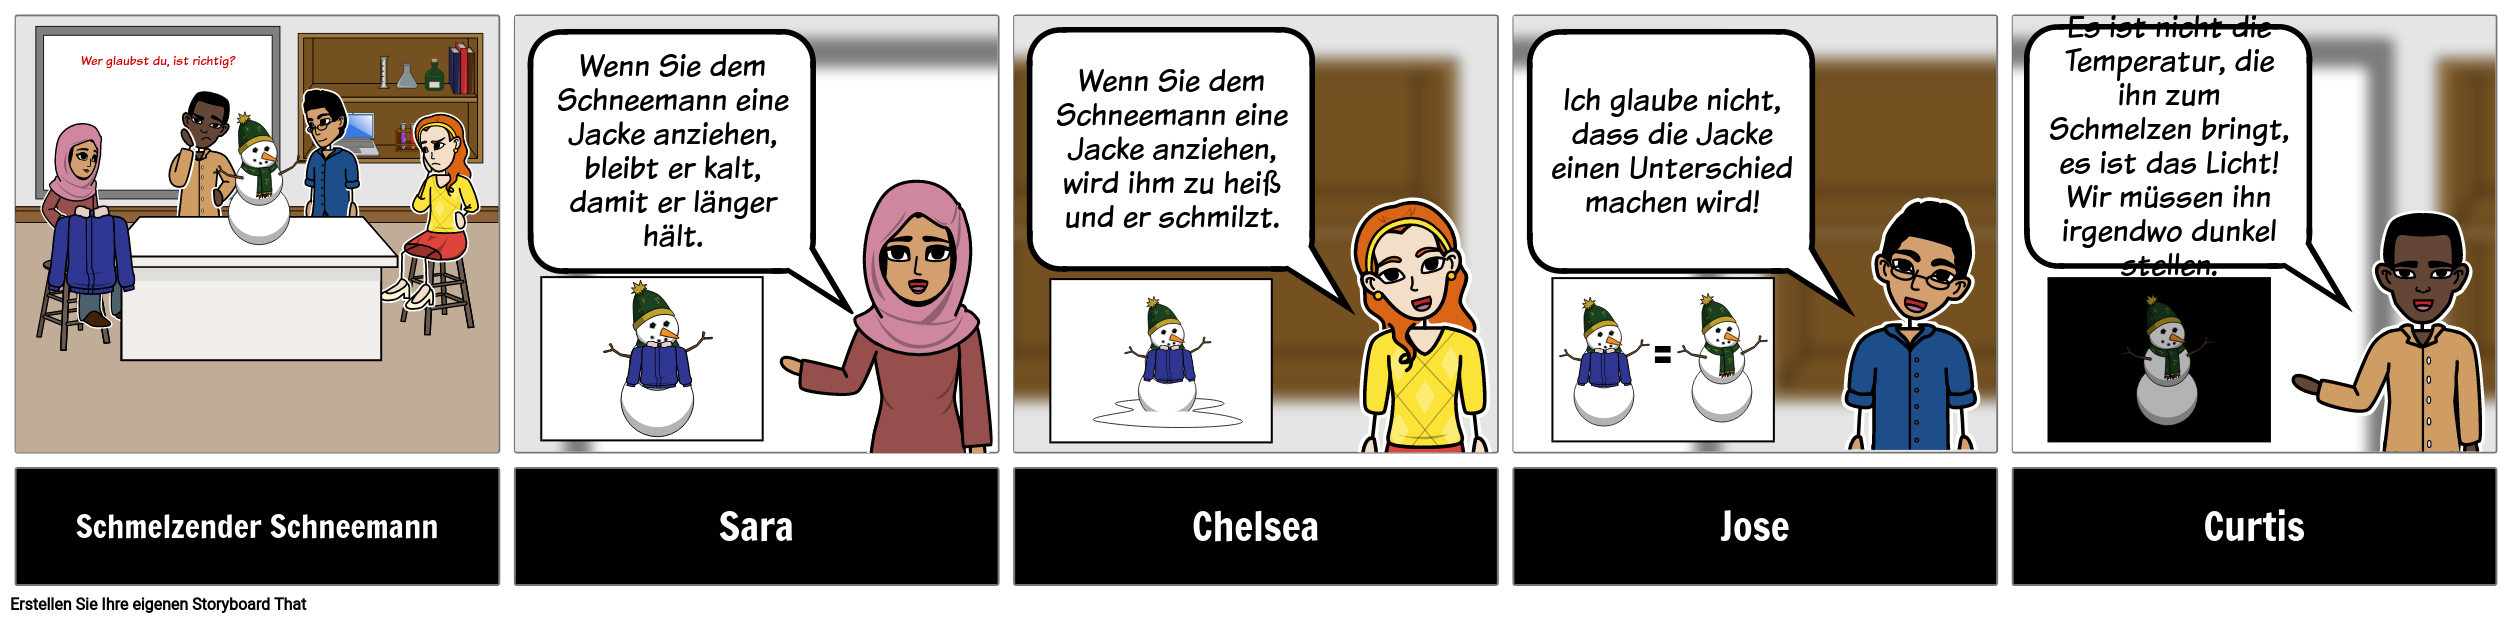 Diskussion Storyboard - ES - Schneemann